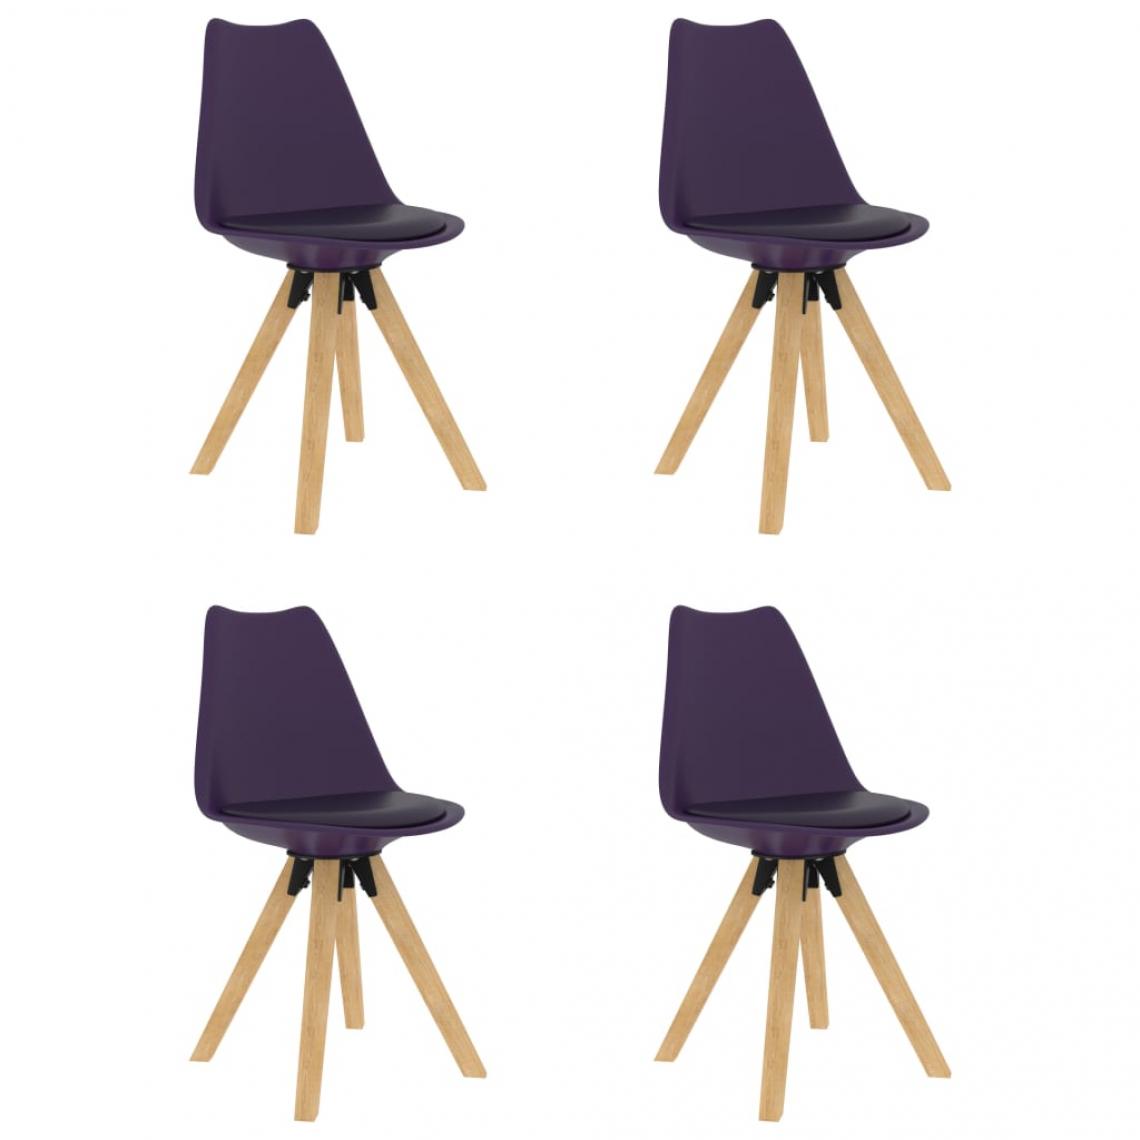 Decoshop26 - Lot de 4 chaises de salle à manger cuisine design scandinave similicuir lilas CDS021665 - Chaises